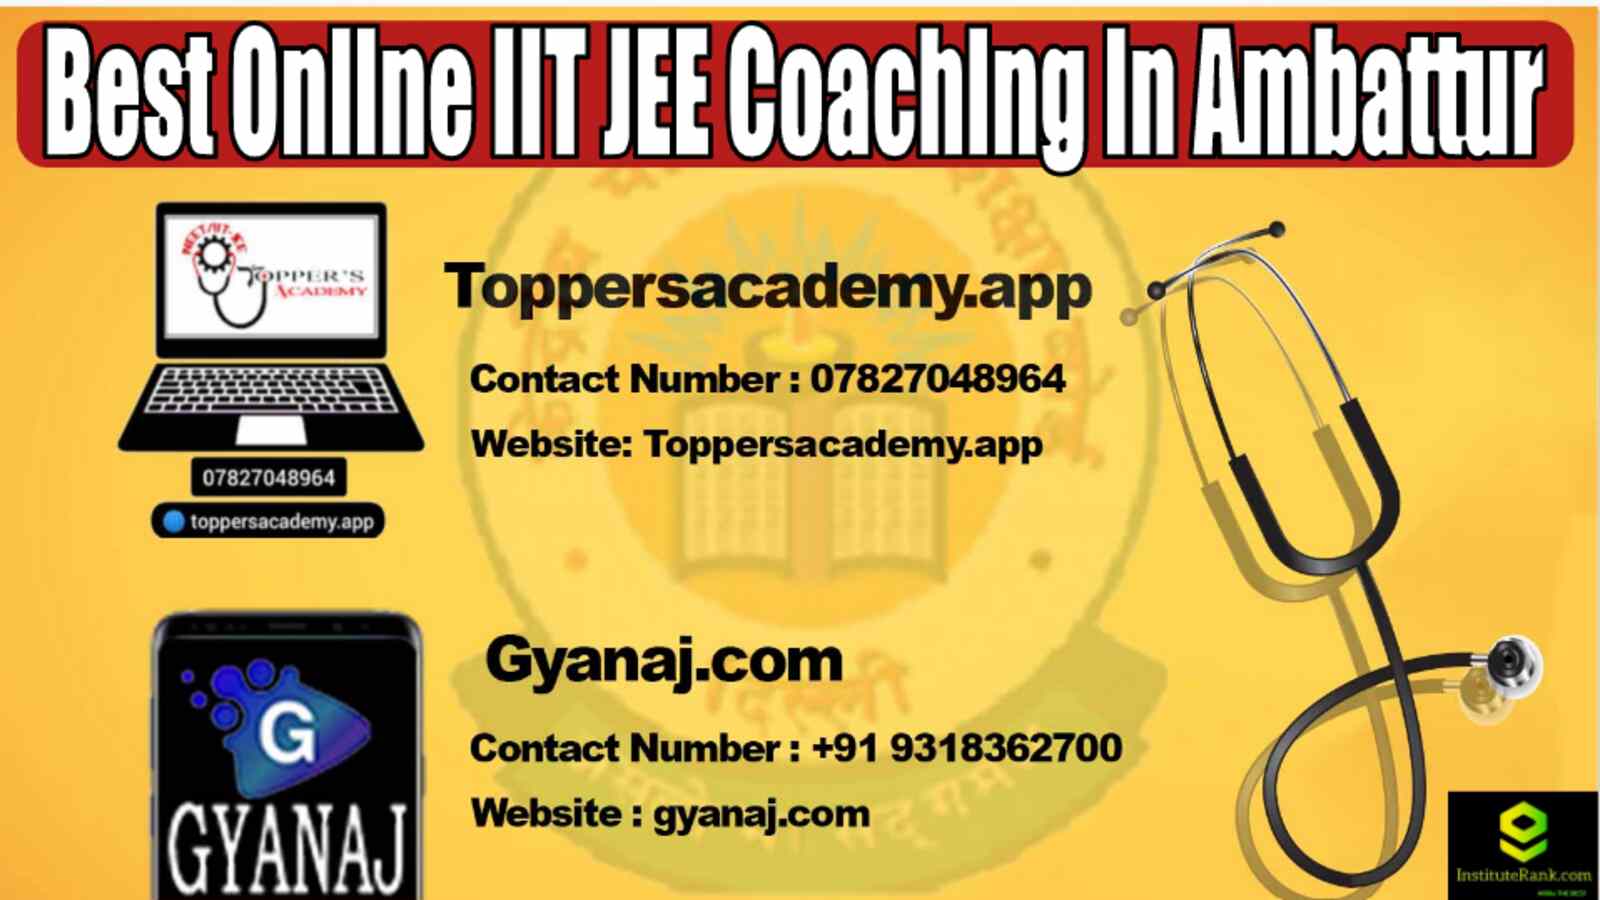 Best Online IIT JEE Coaching in Ambattur 2022